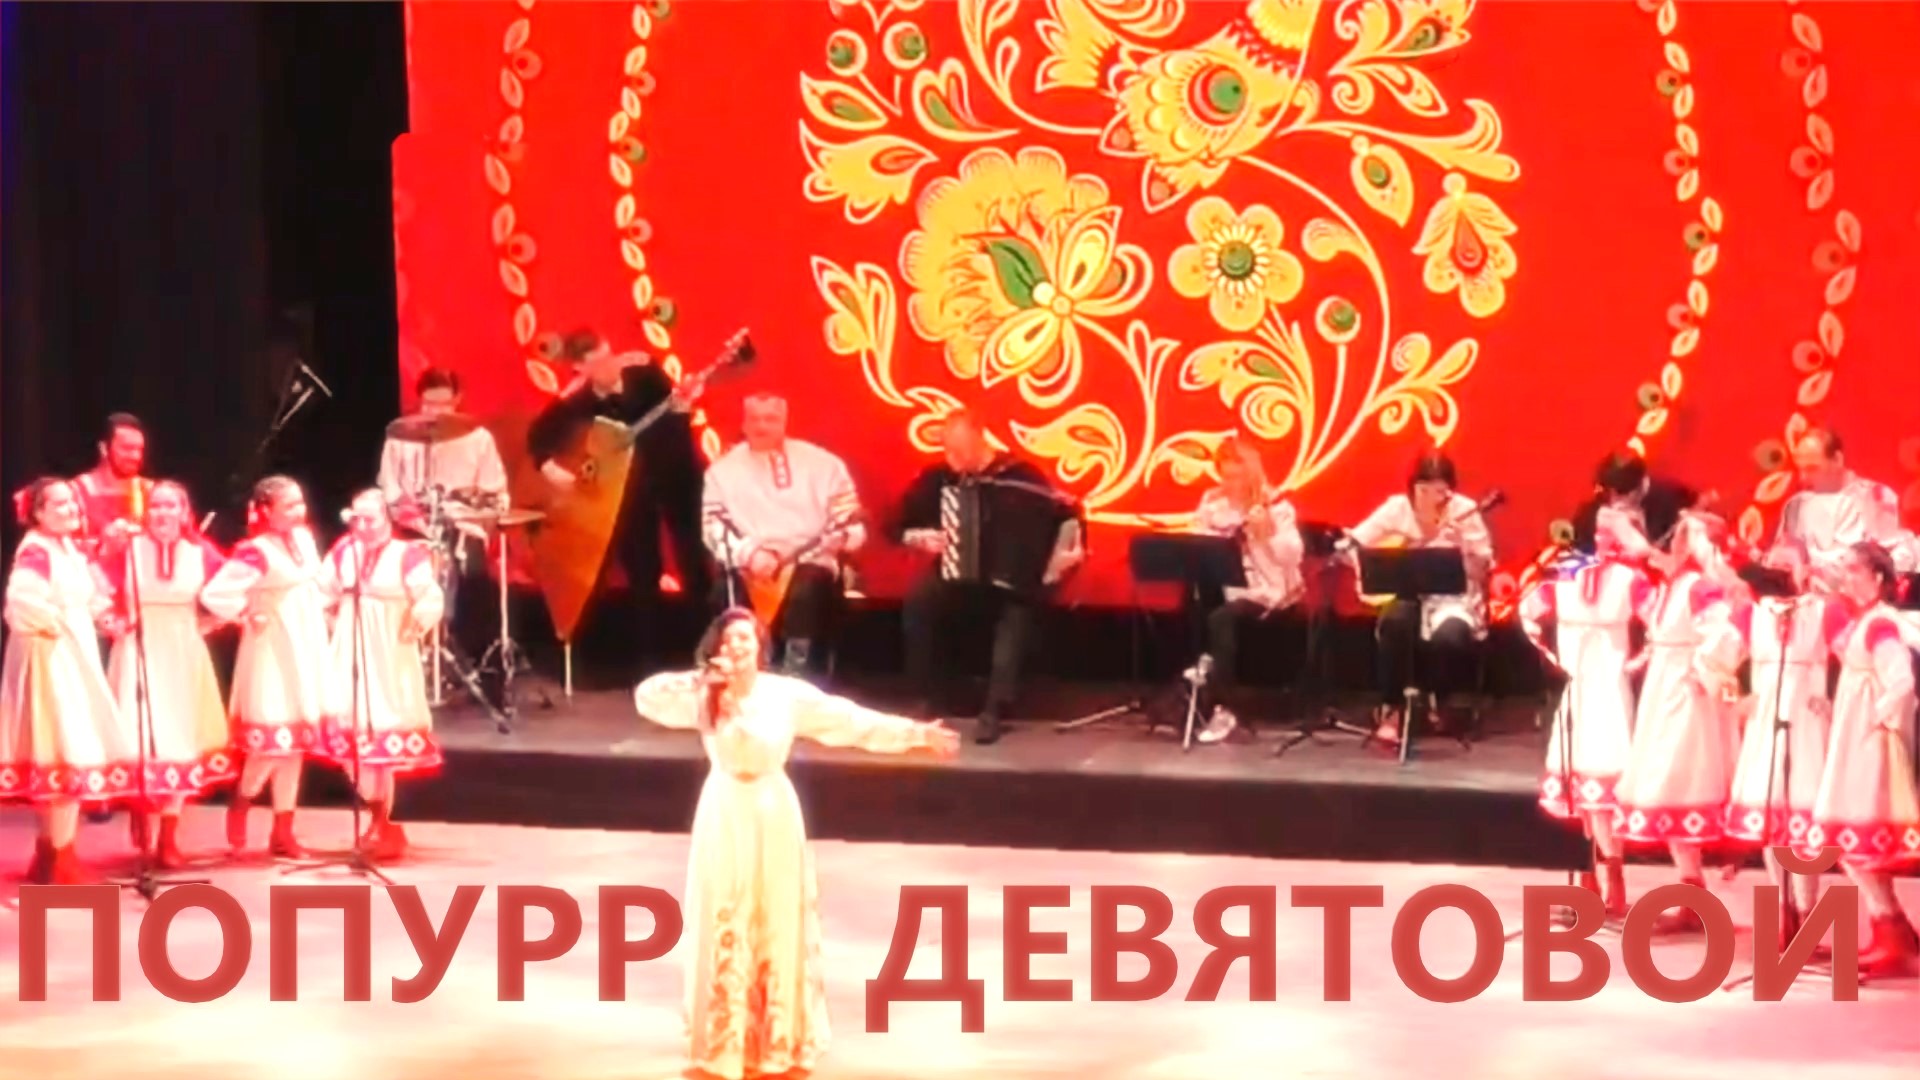 Попурри Марины ДЕВЯТОВОЙ / Marina DEVYATOVA 's Medley